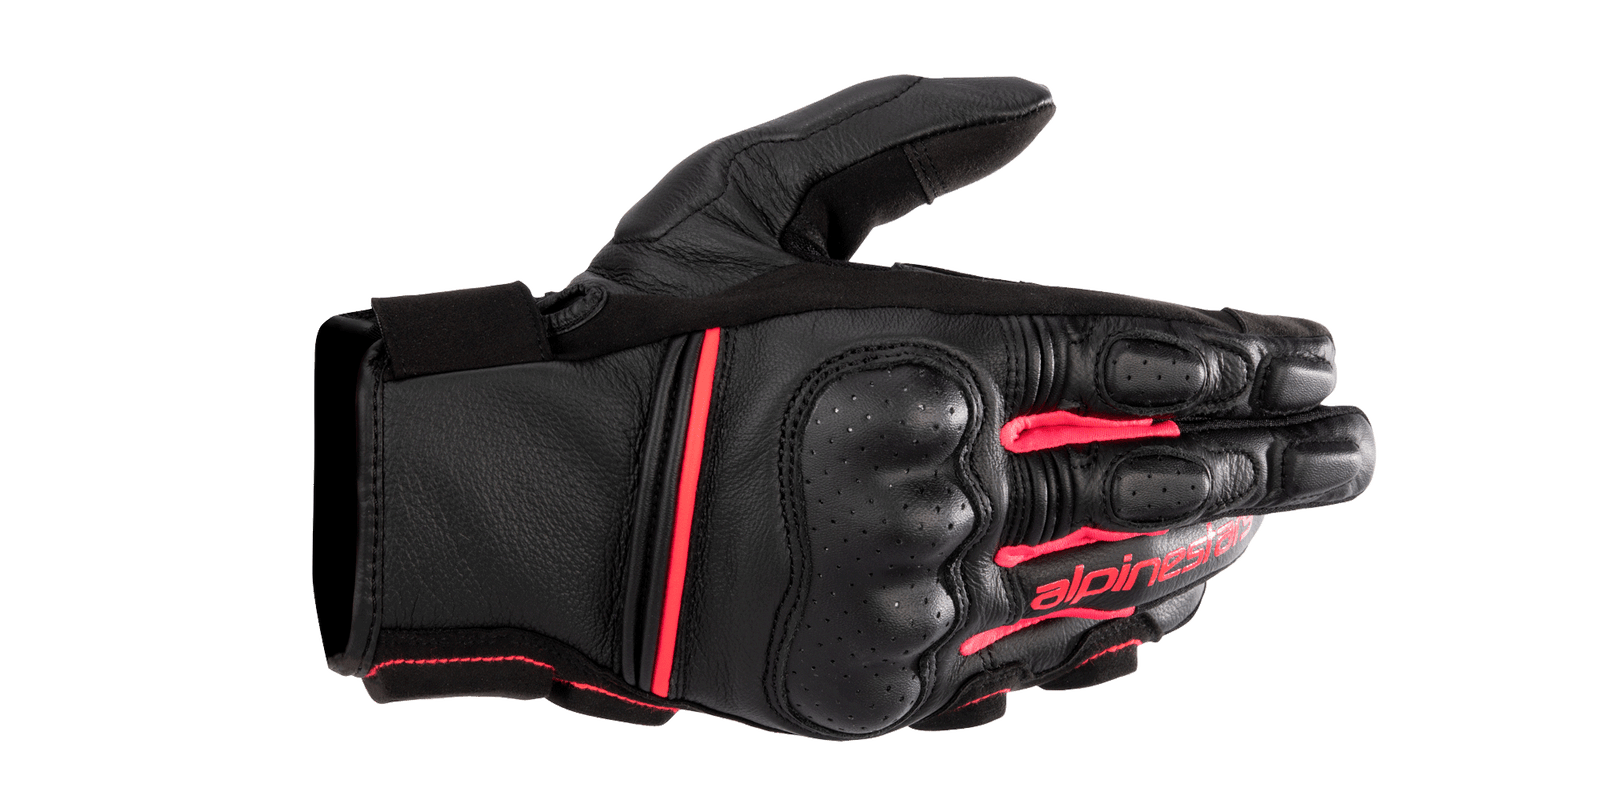 Femme Stella Phenom Leather Air Glove